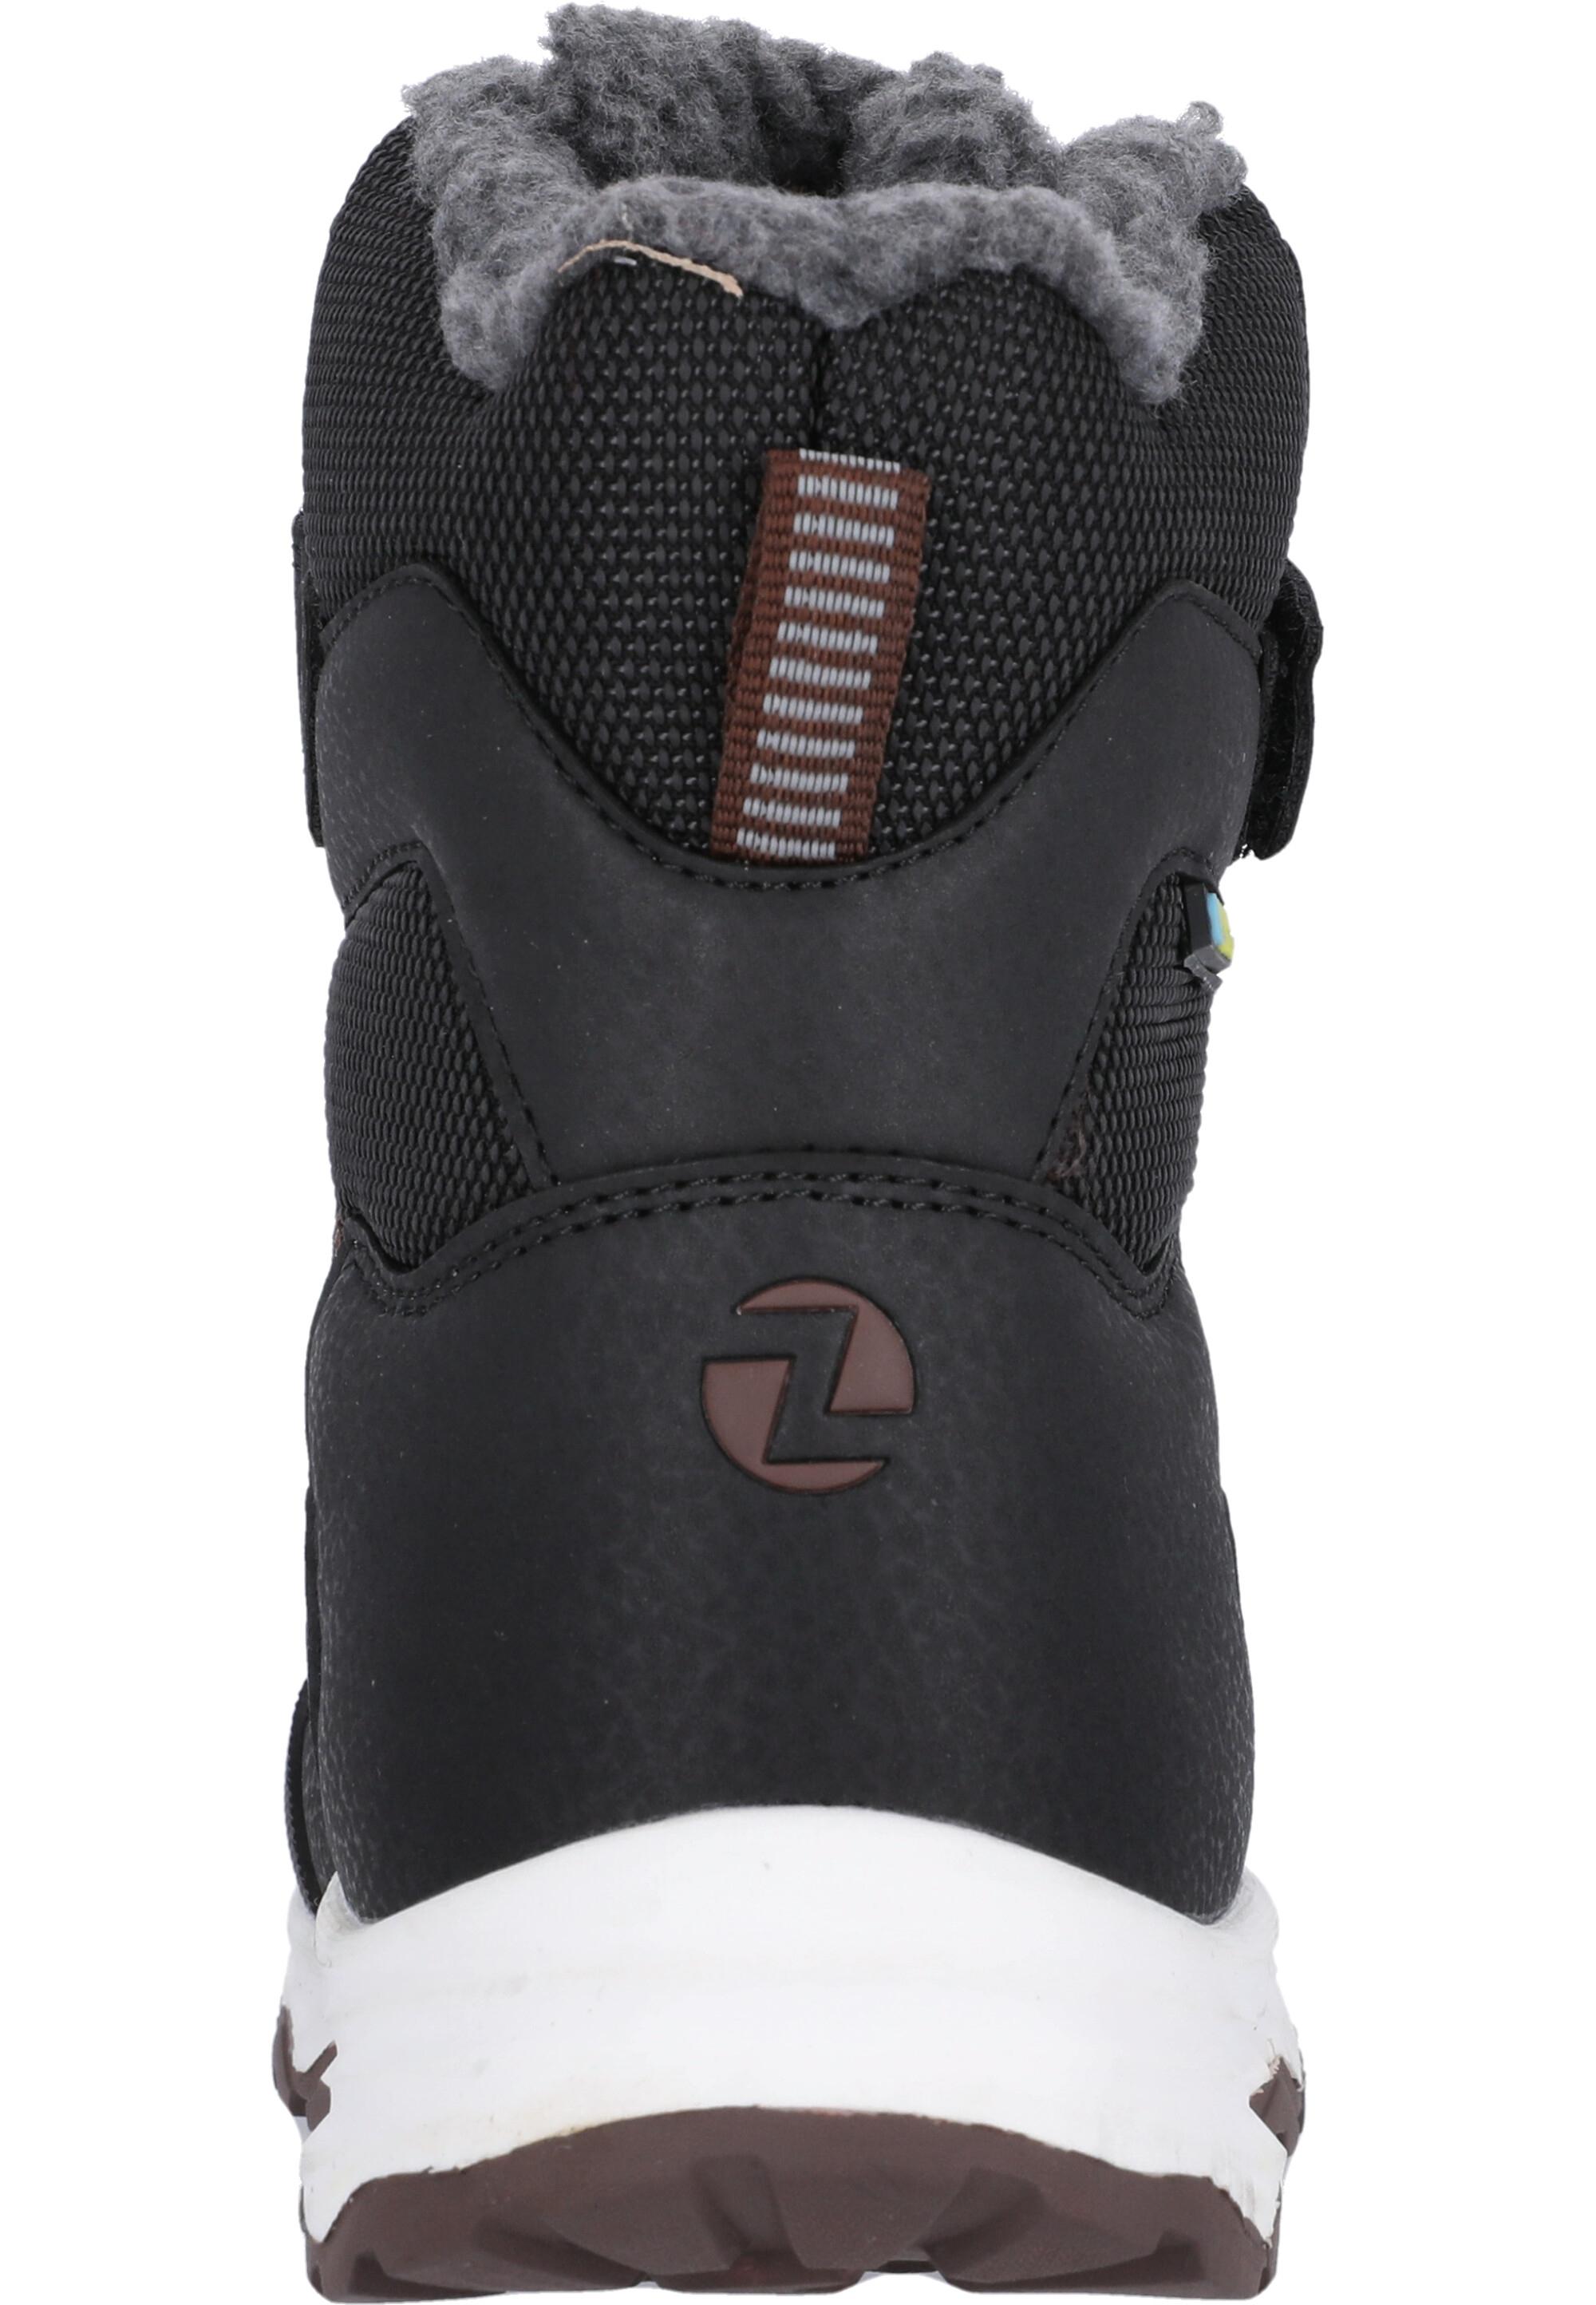 Shop Stiefel von 1001 im Kinder Online Black Balful SportScheck ZigZag kaufen